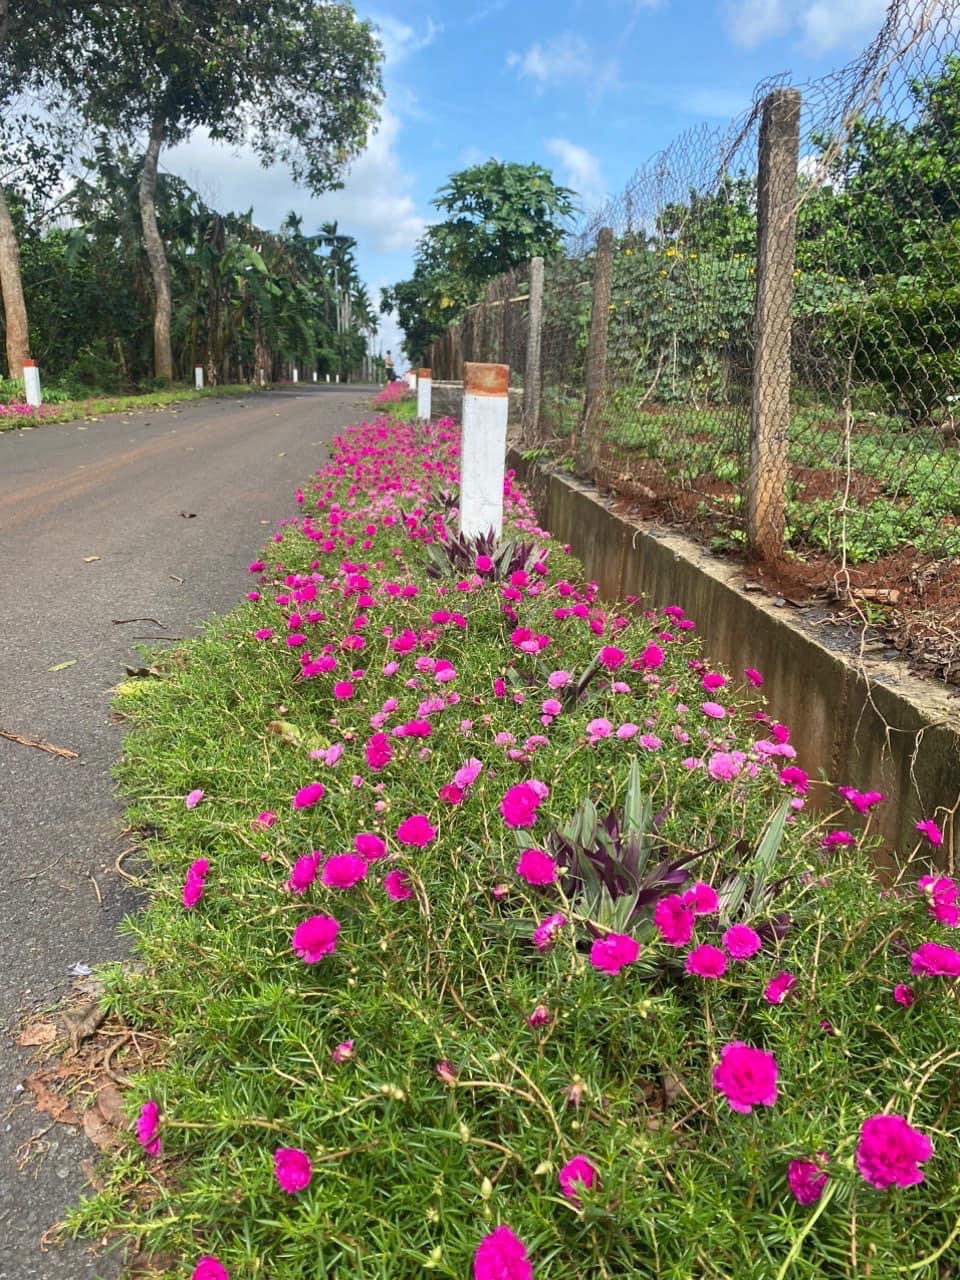 Đường hoa nông thôn mới ở một huyện của Bà Rịa-Vũng Tàu đẹp mê tơi với hoa mười giờ, cây bông trang - Ảnh 9.